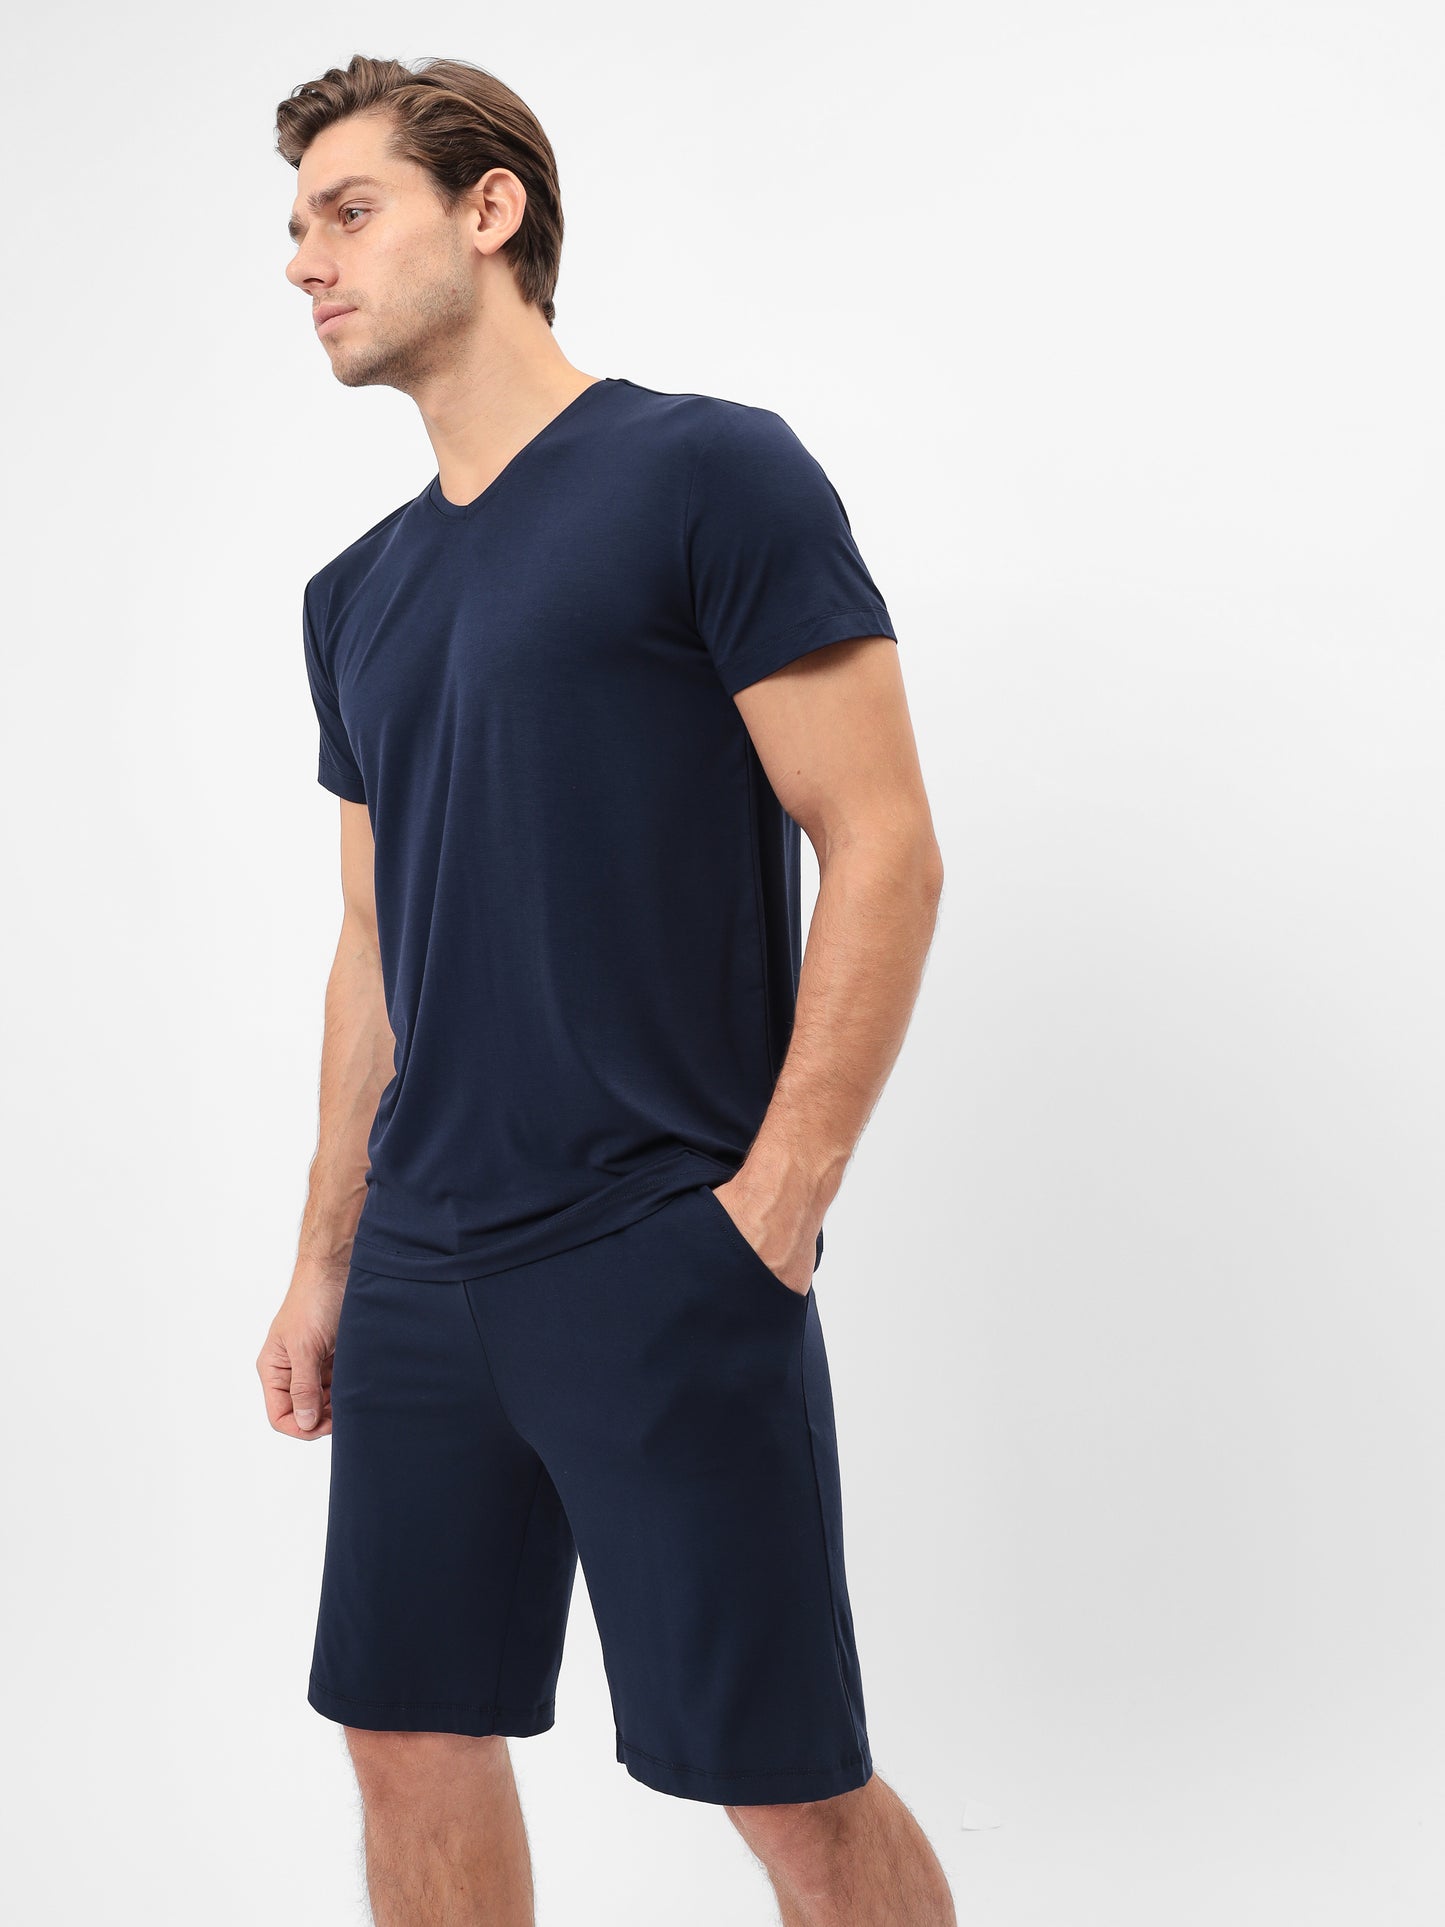 2teiliger Herren Pyjama Set mit Short LMS-6235 Navy Marinenblau